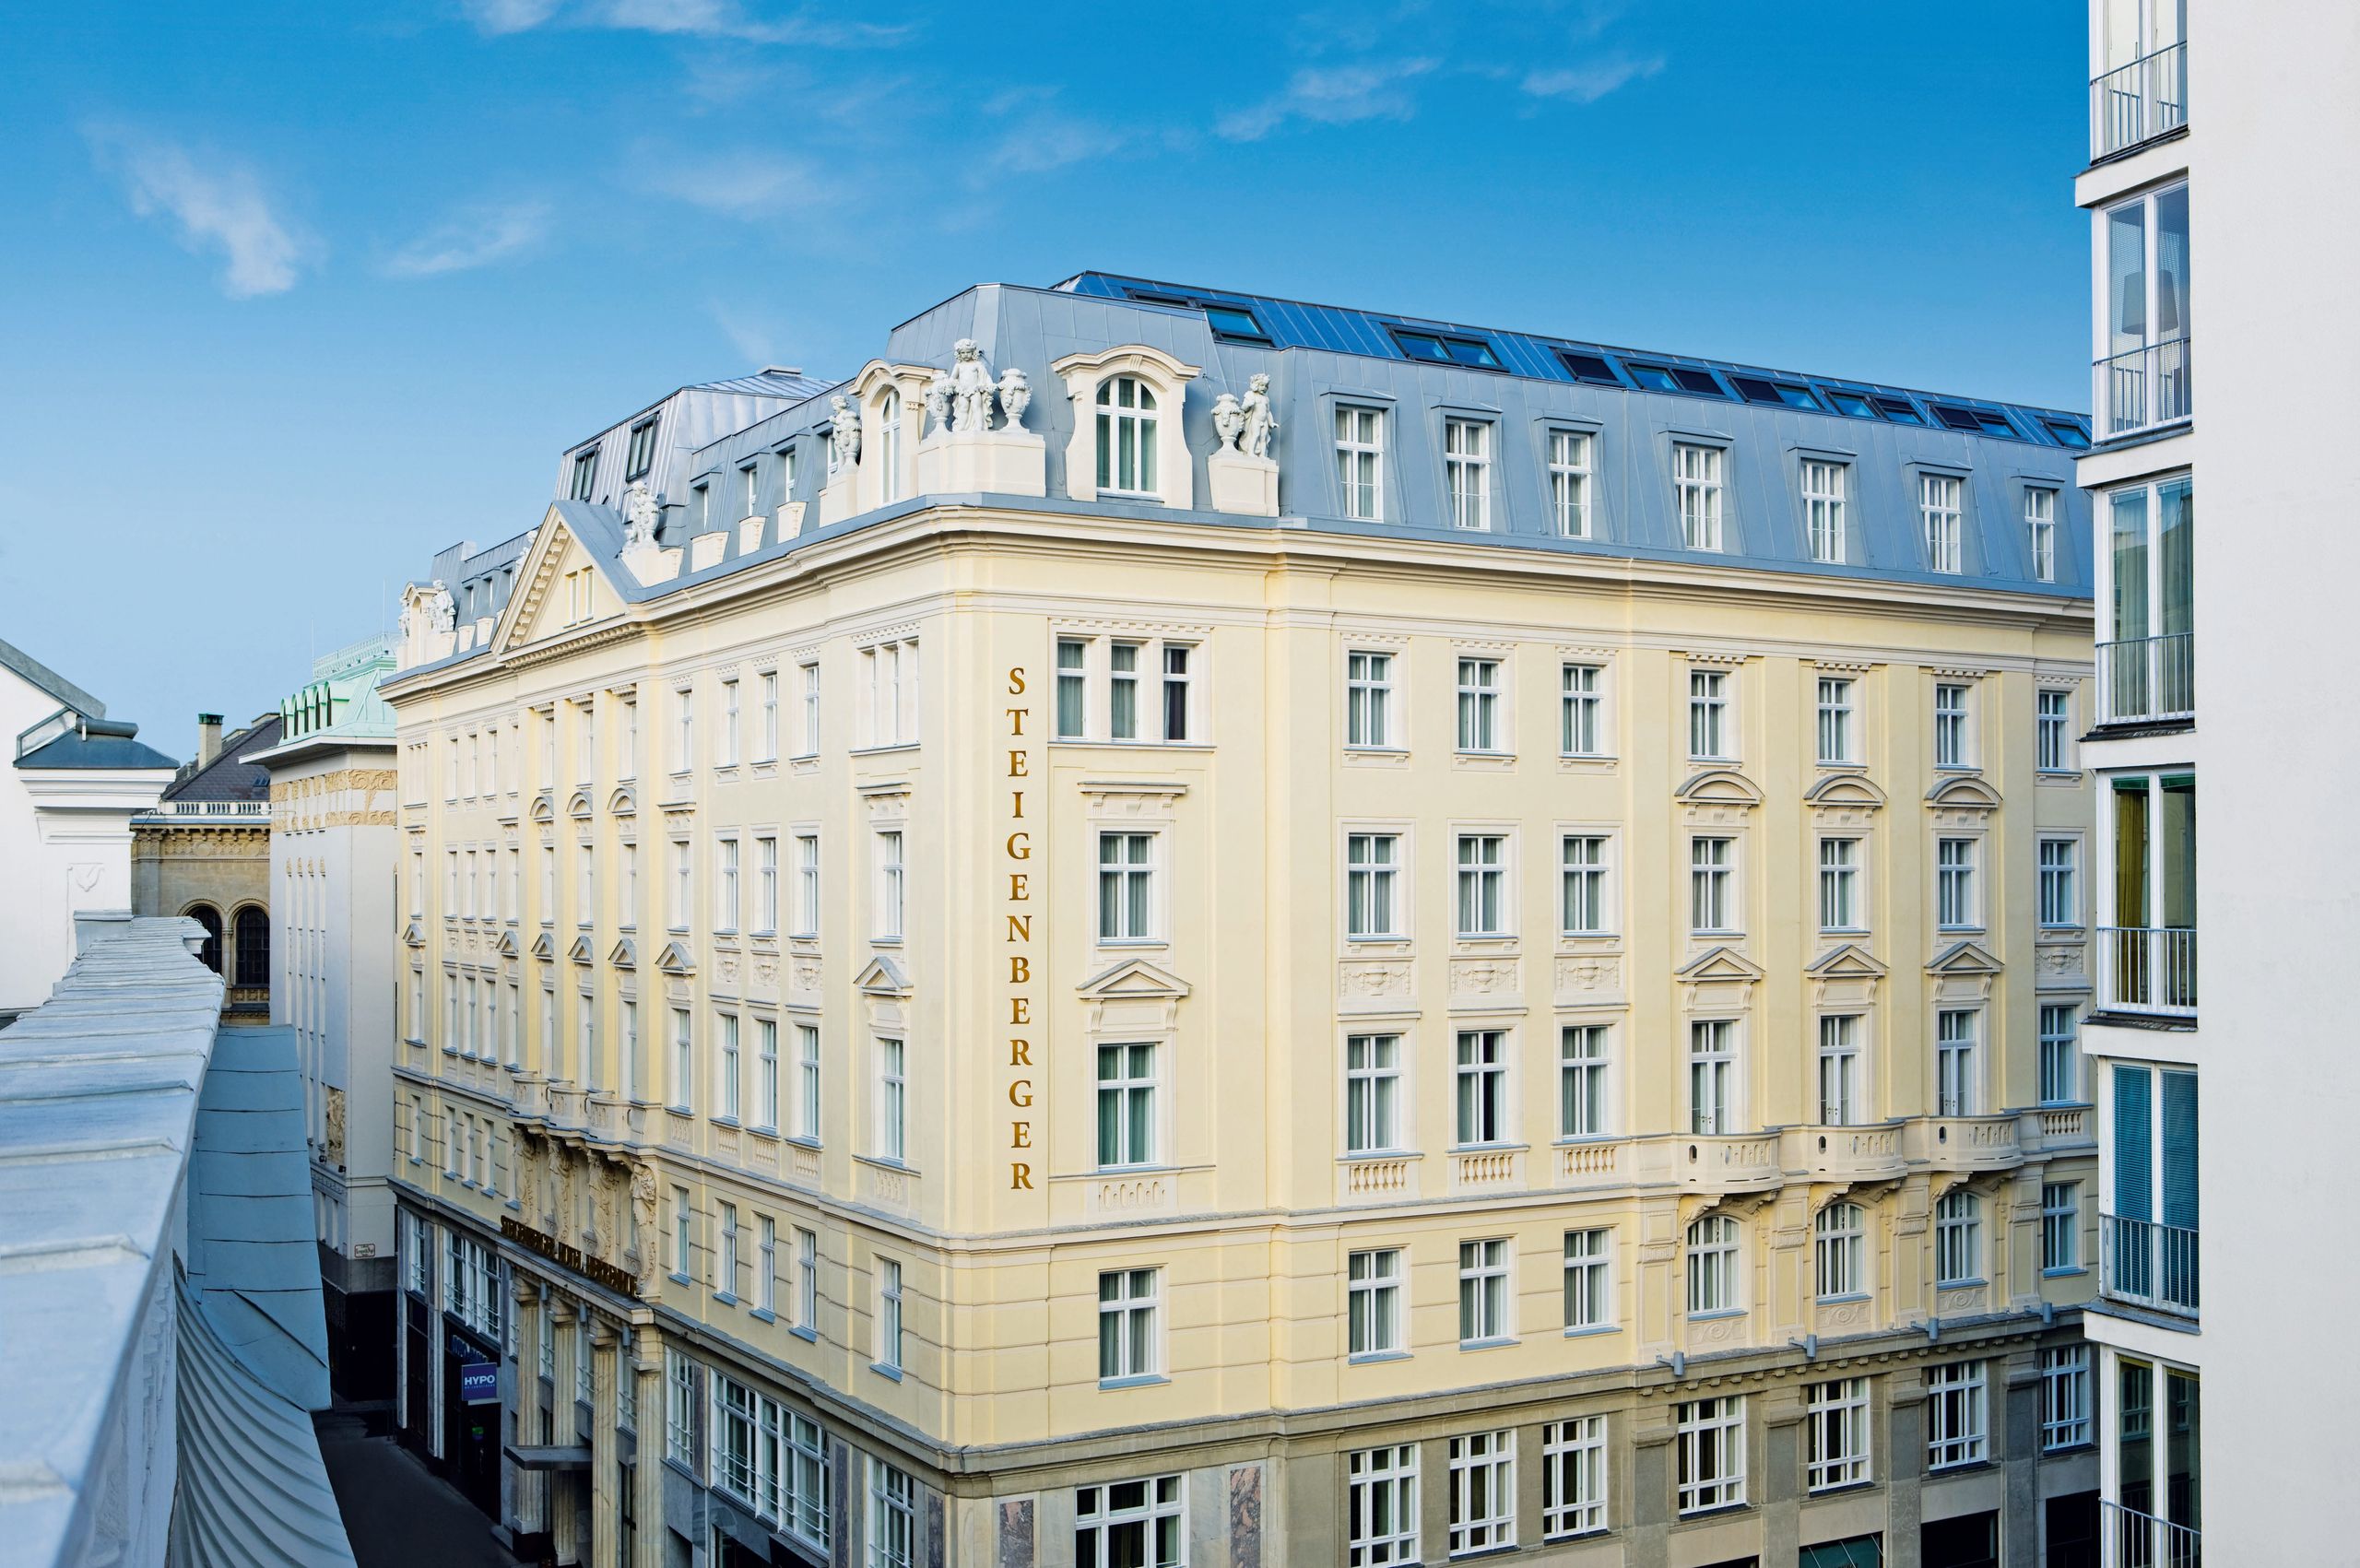 Steigenberger Hotel Herrenhof - Vienna